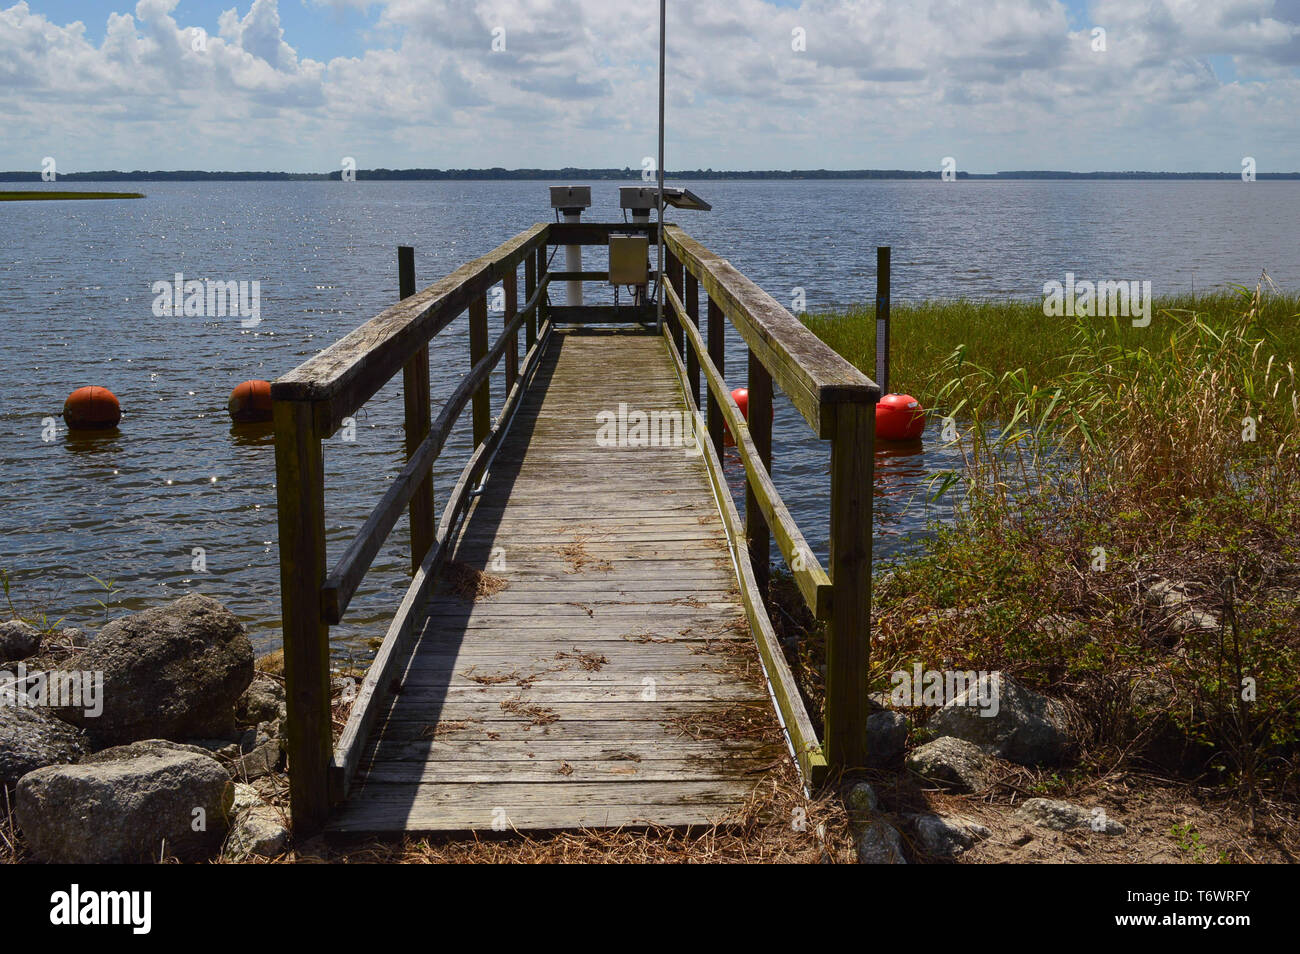 Holzterrasse Gehweg Plattform für Wasser Management Monitoring Station mit Telemetriegeräten Struktur Zugang am Lake Harris Florida Feuchtgebiet Pflanzen Stockfoto